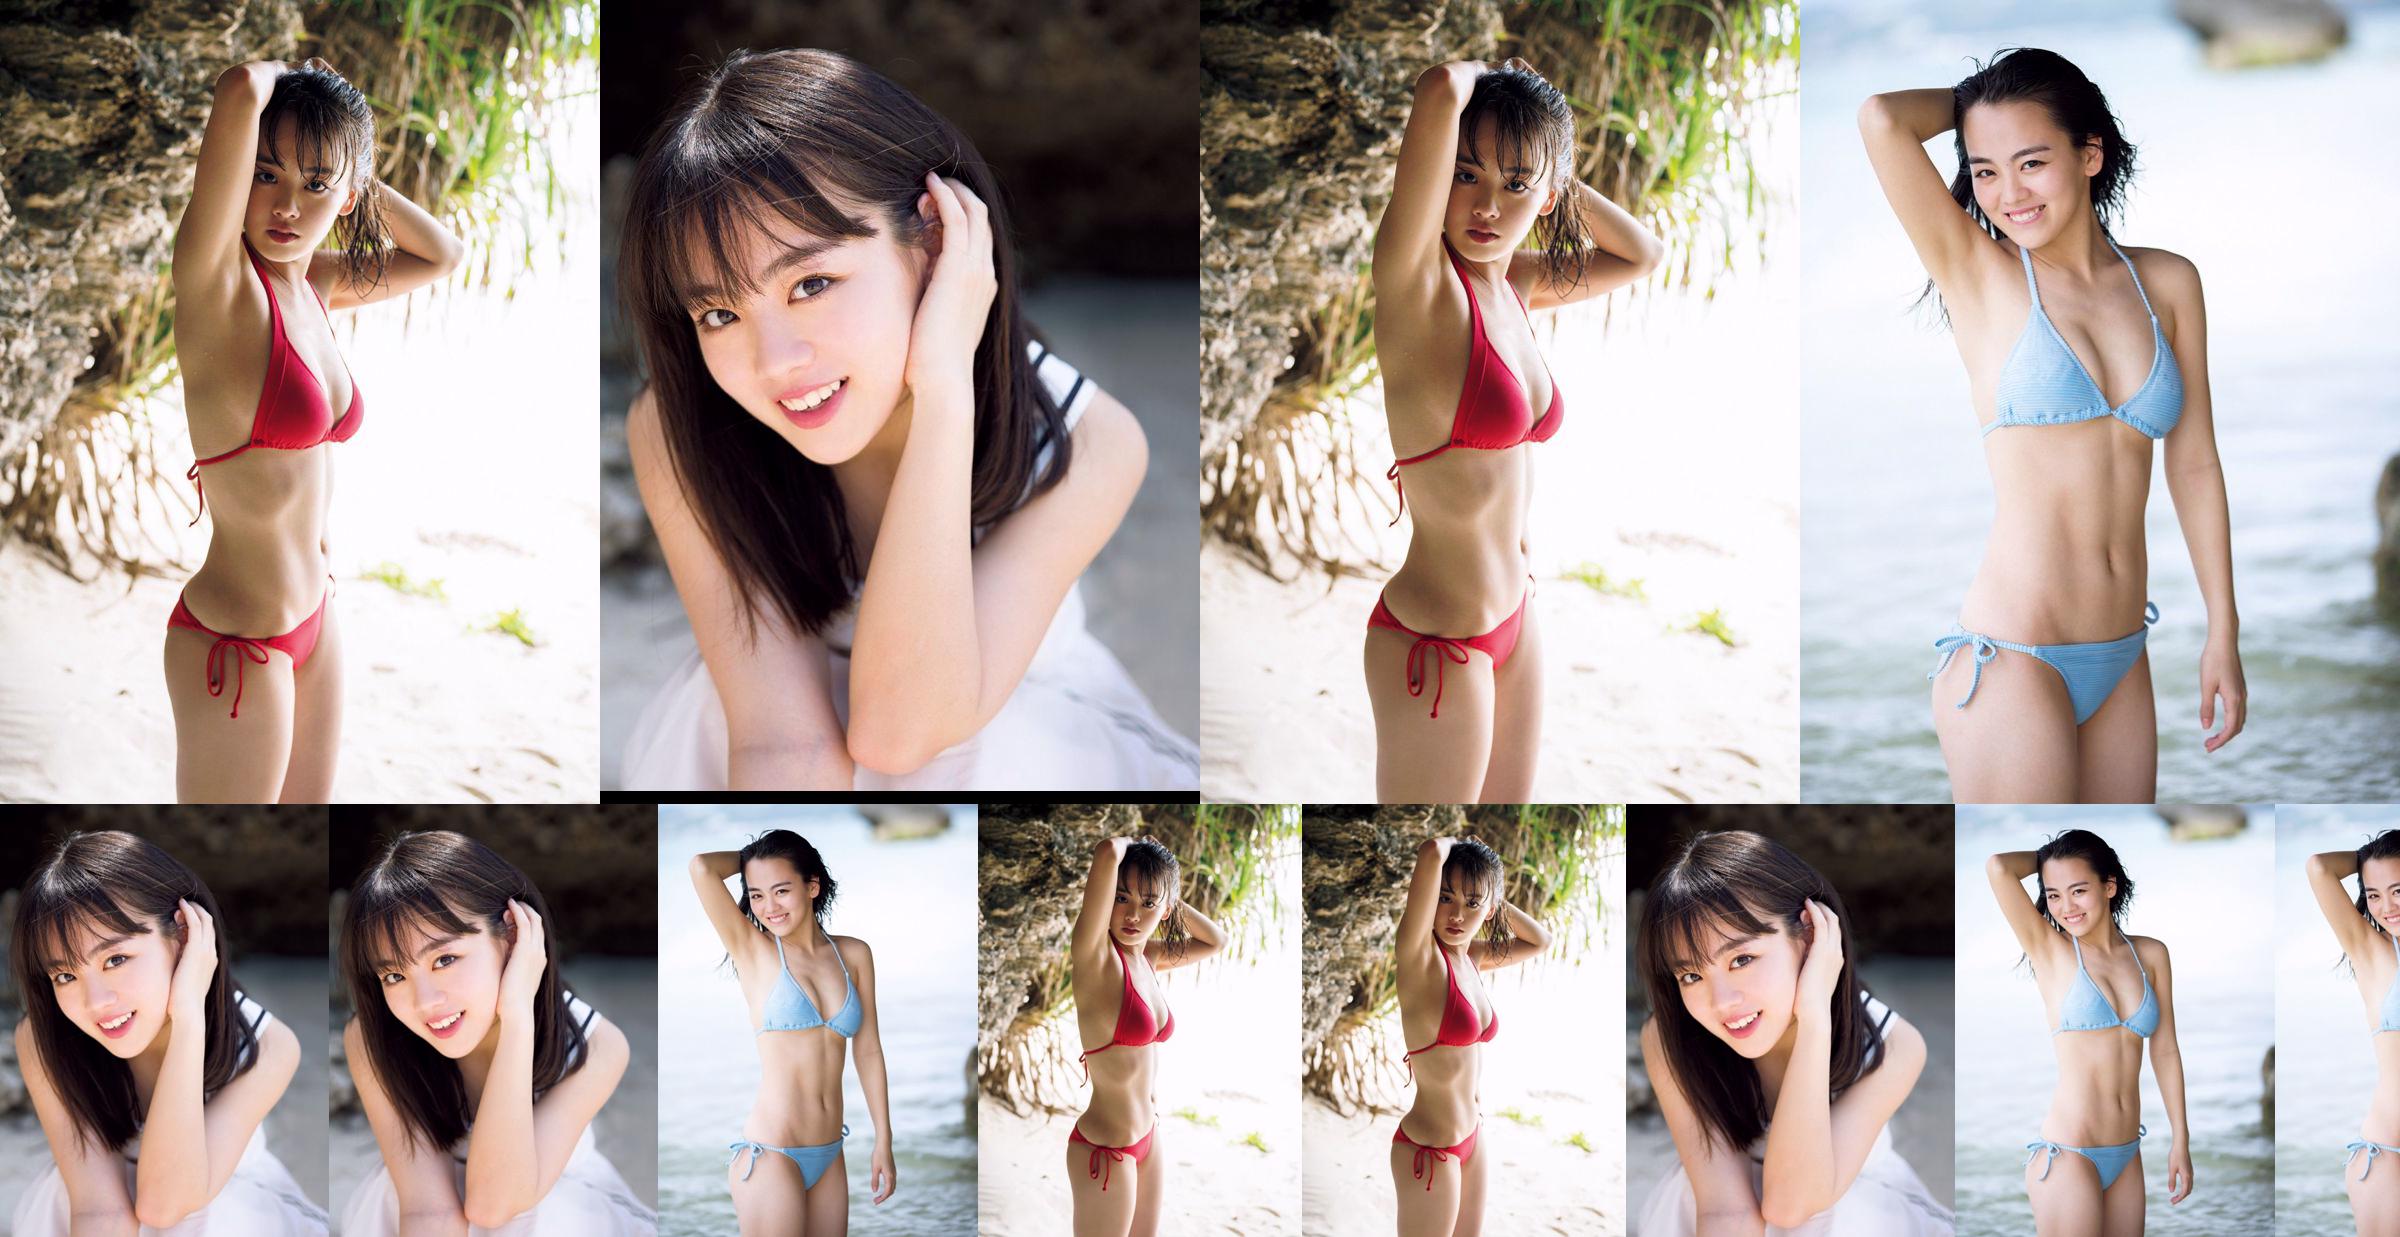 [วันศุกร์] Rikka Ihara << อดีตกัปตันชมรมเต้น Tomioka High School เปิดตัวในชุดบิกินี่ >> รูปภาพ No.df3cf3 หน้า 1